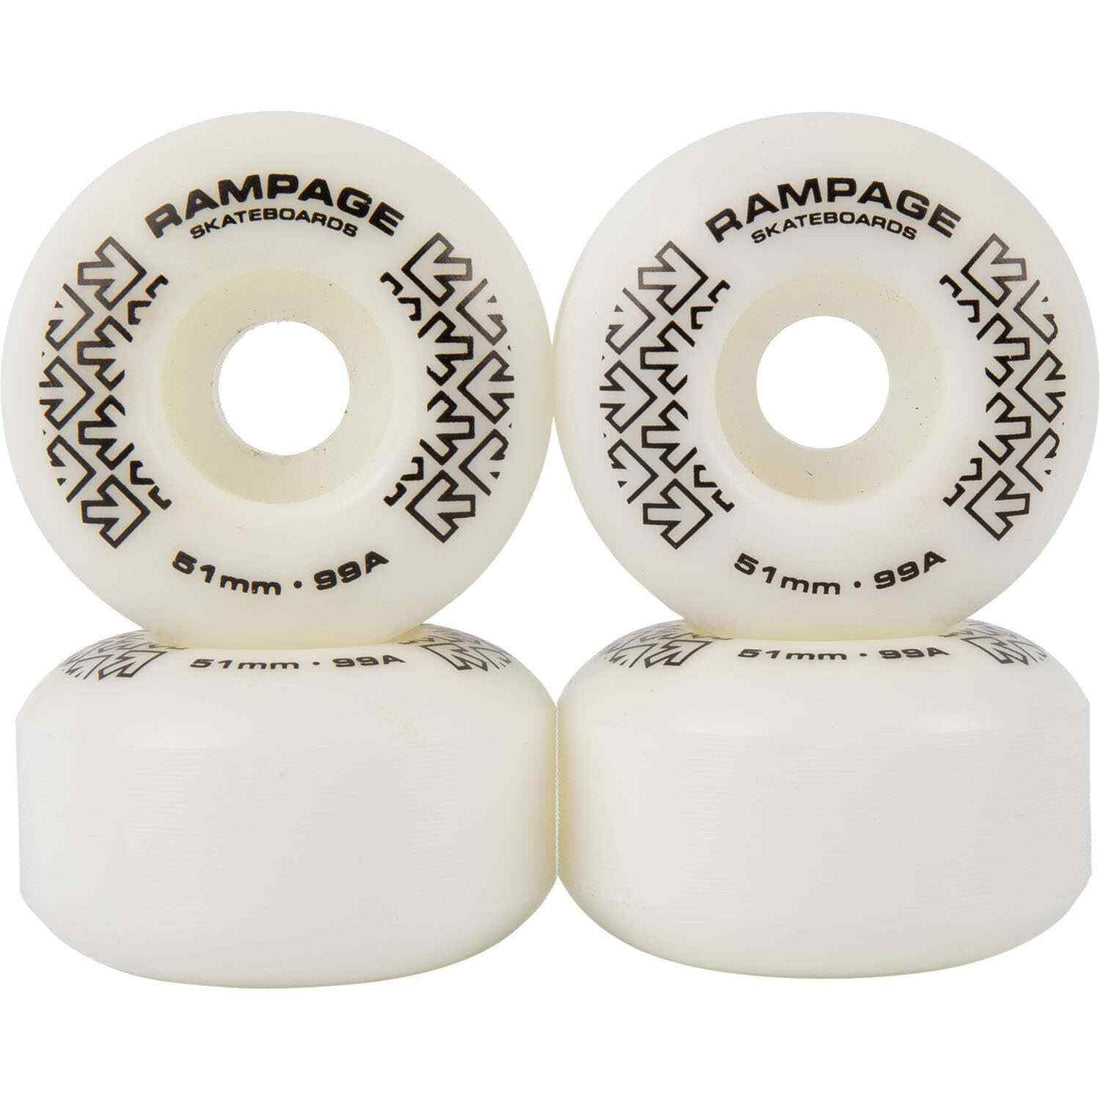 Rampage 99A Skateboard Wheels White/Black